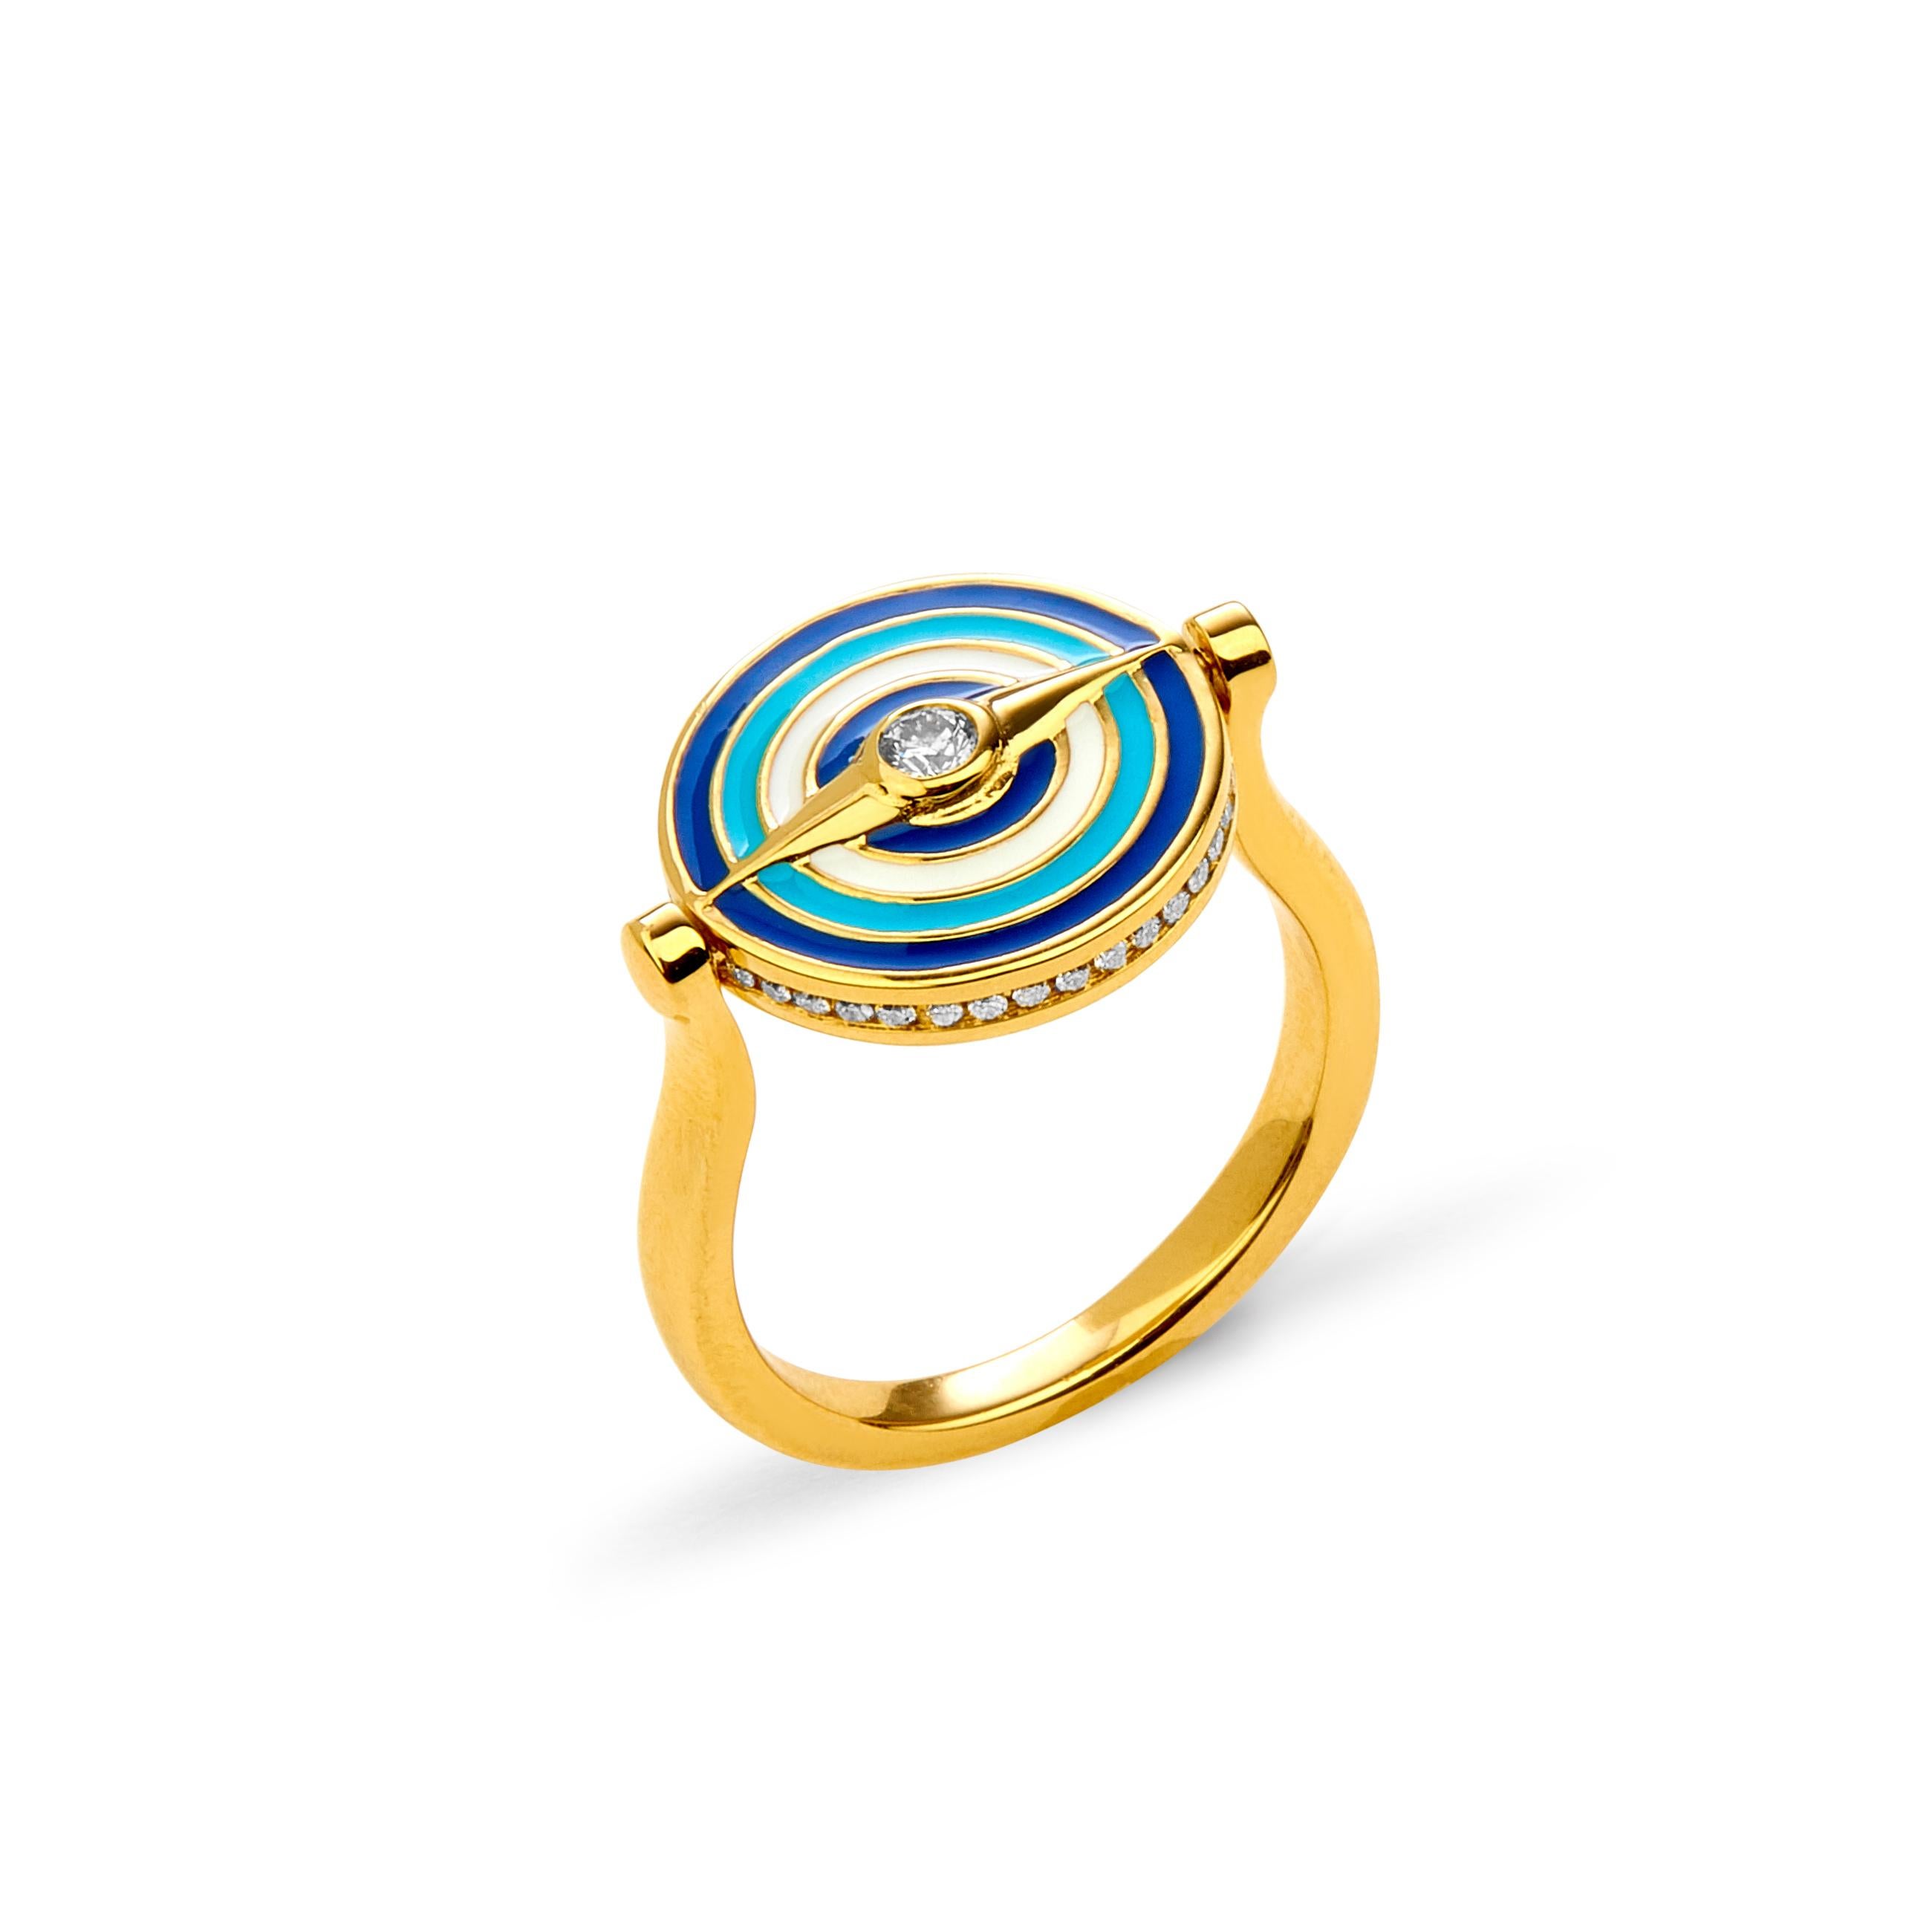 Erstellt in 18kyg
Umkehrbarer Ring des bösen Auges
Azurblau, türkisblau und weiß emailliert
Diamanten ca. 0.60 ct
Drehmechanismus zum Drehen der Versionen des bösen Blicks
Ring Größe US 6.5
Limitierte Auflage

Dieser erhabene 18-karätige Ring mit